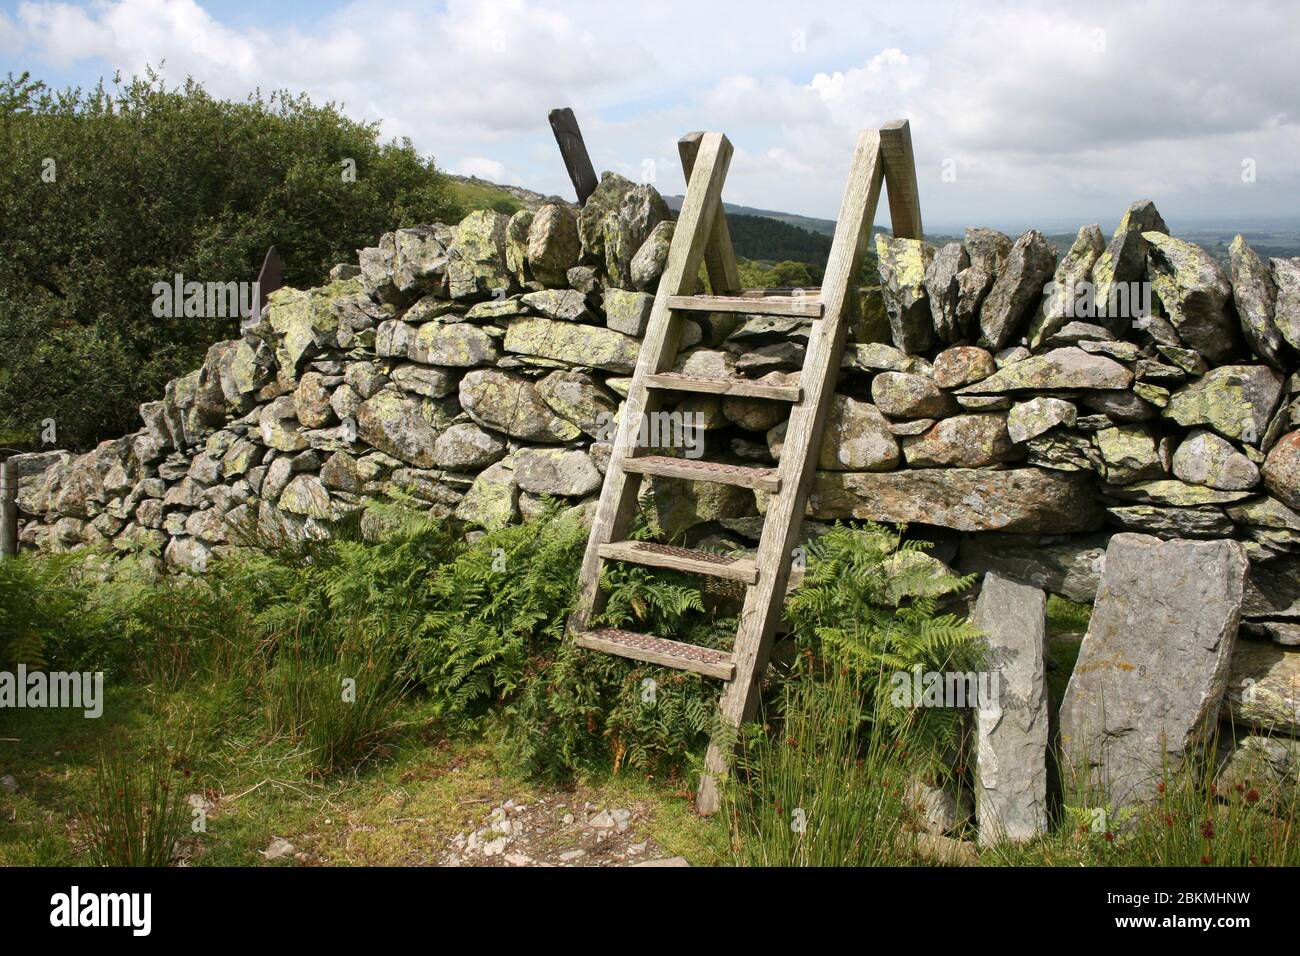 Échelle en bois Stile traversant mur en pierre, vallée de Llafar, Snowdonia, pays de Galles Banque D'Images